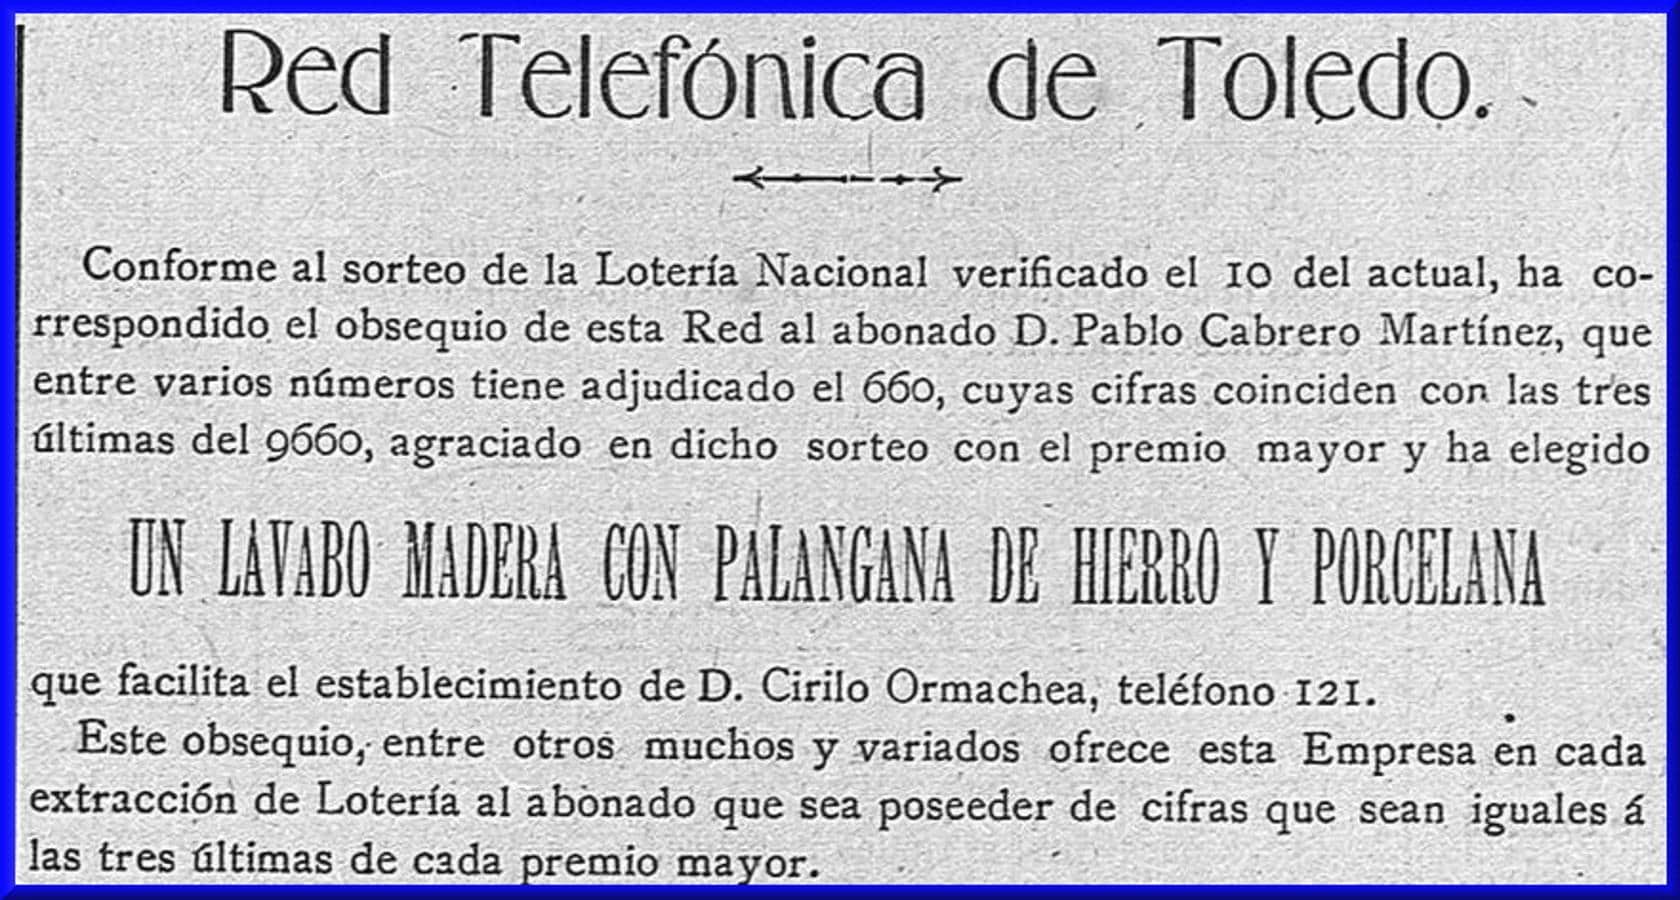 Promoción comercial de la Red Telefónica de Toledo en 1909 